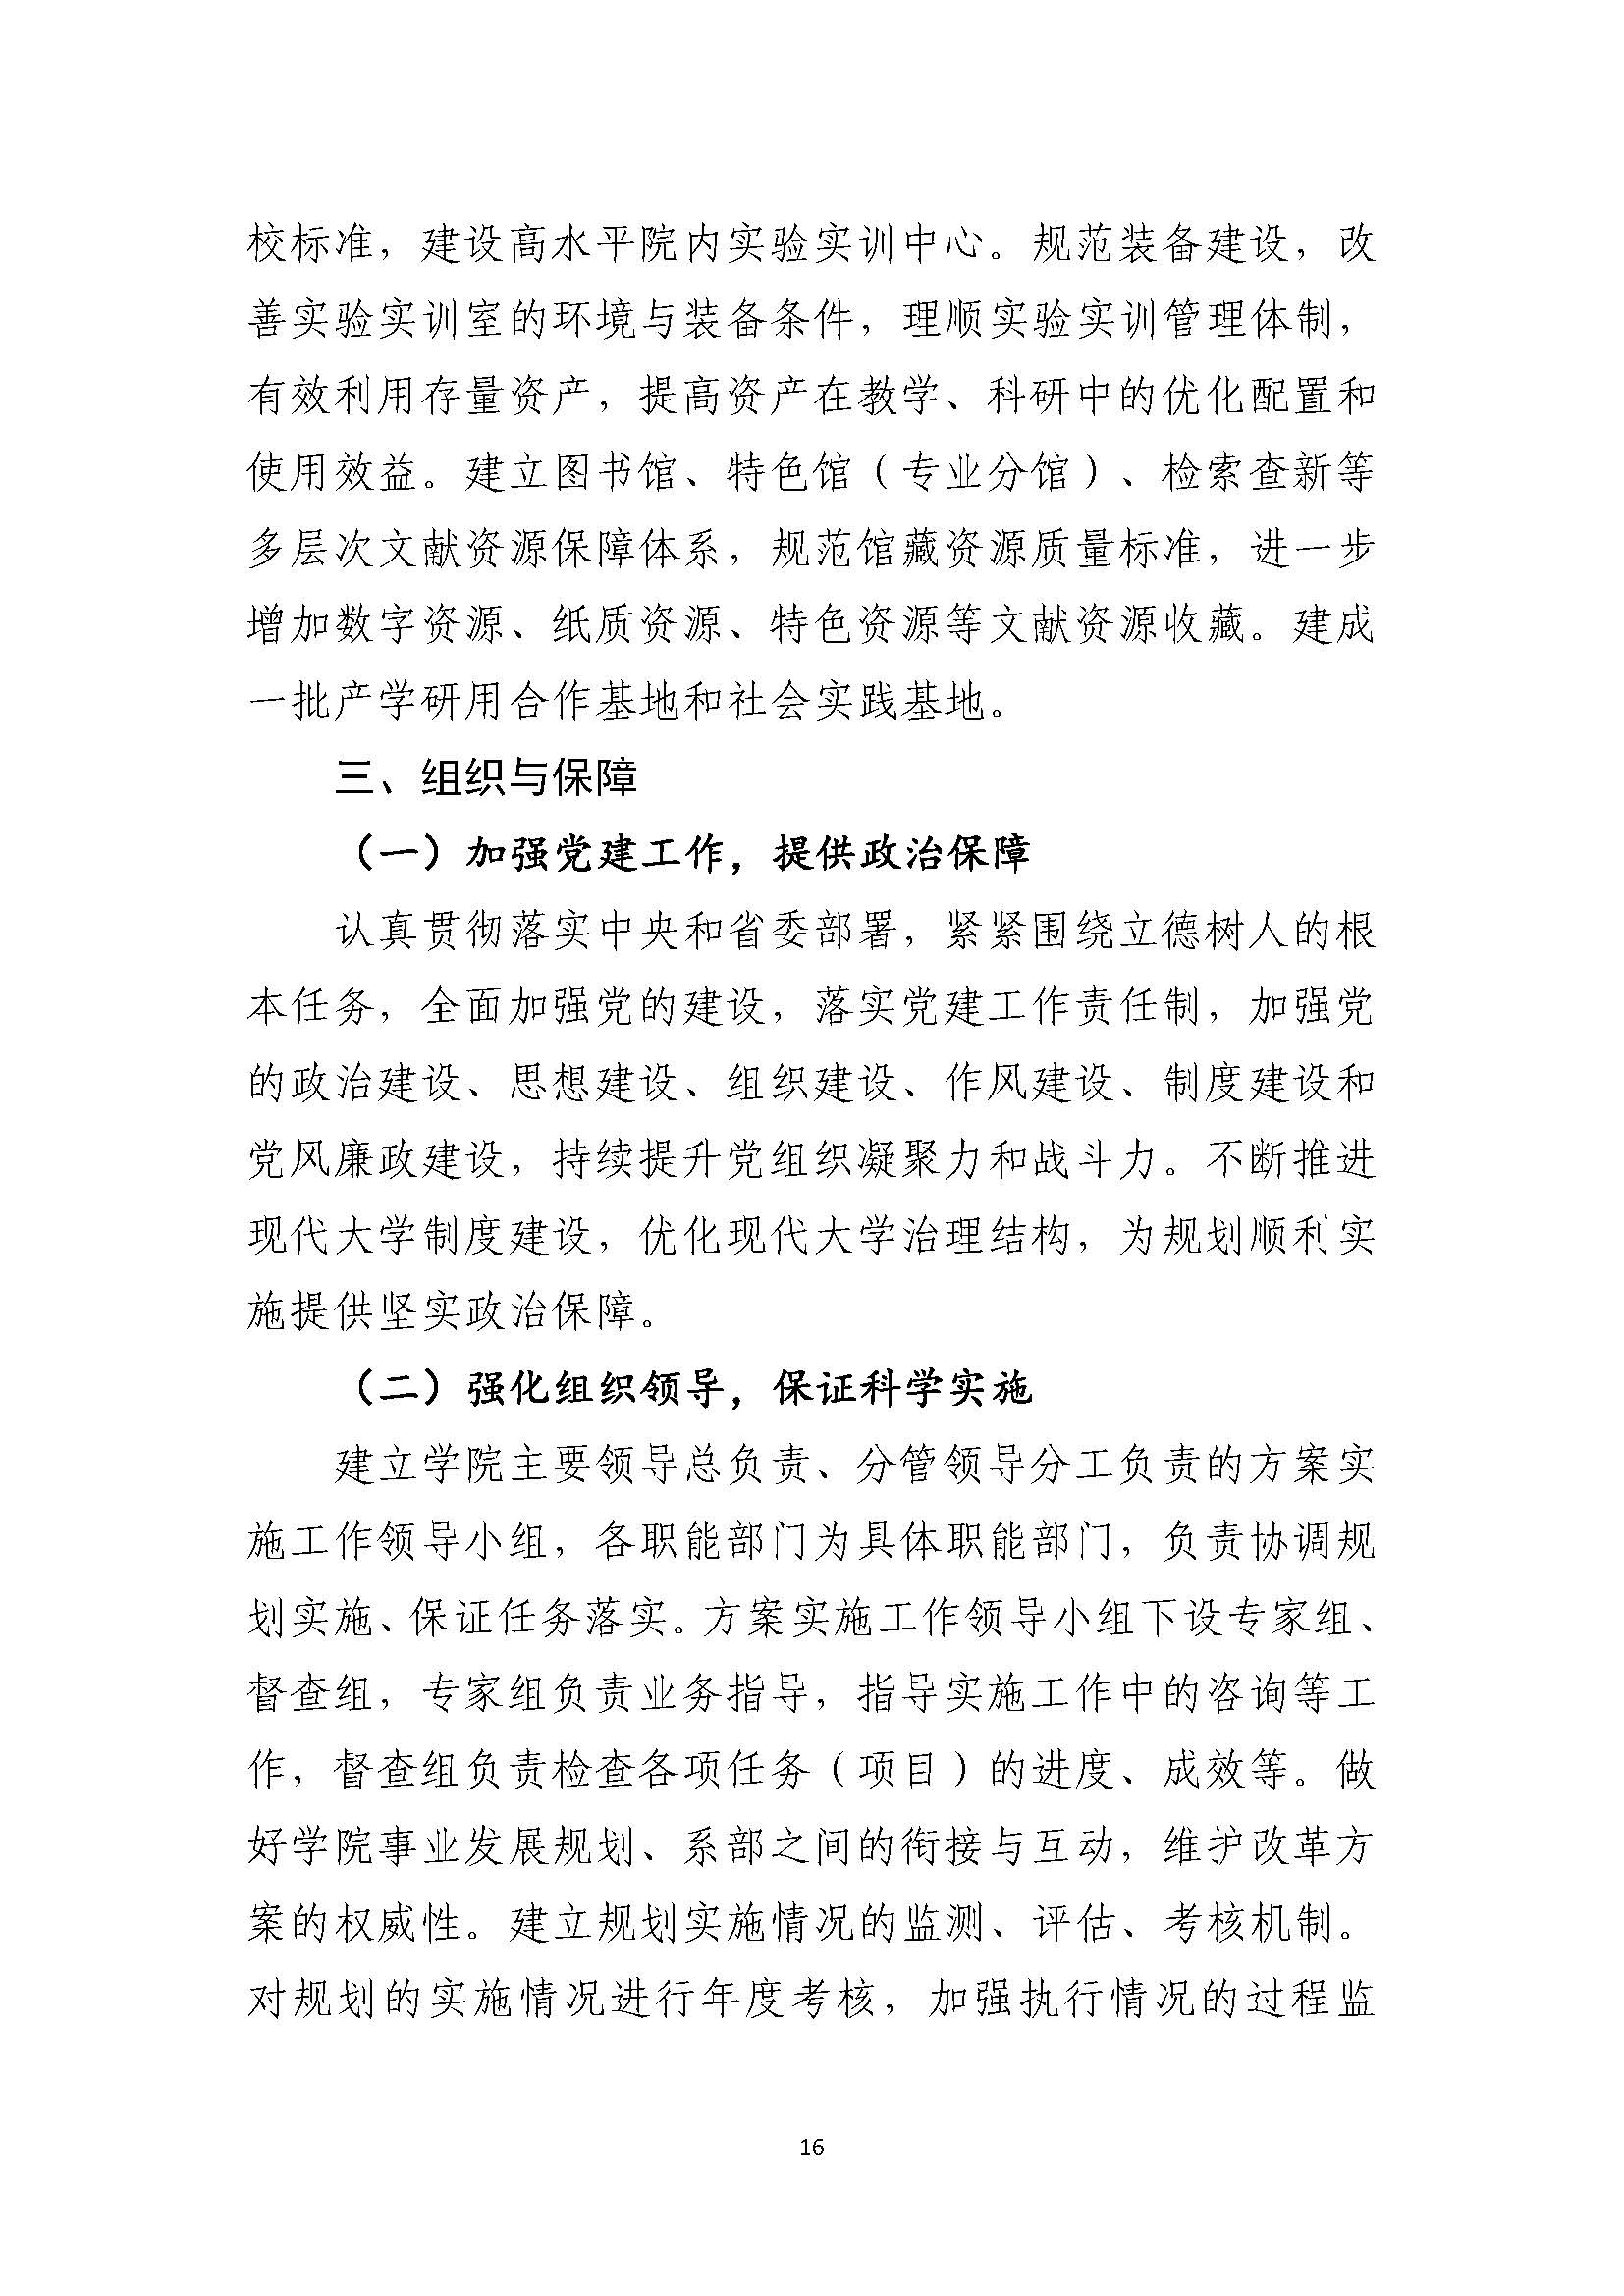 郑州黄河护理职业学院2021-2025年发展规划_页面_16.jpg